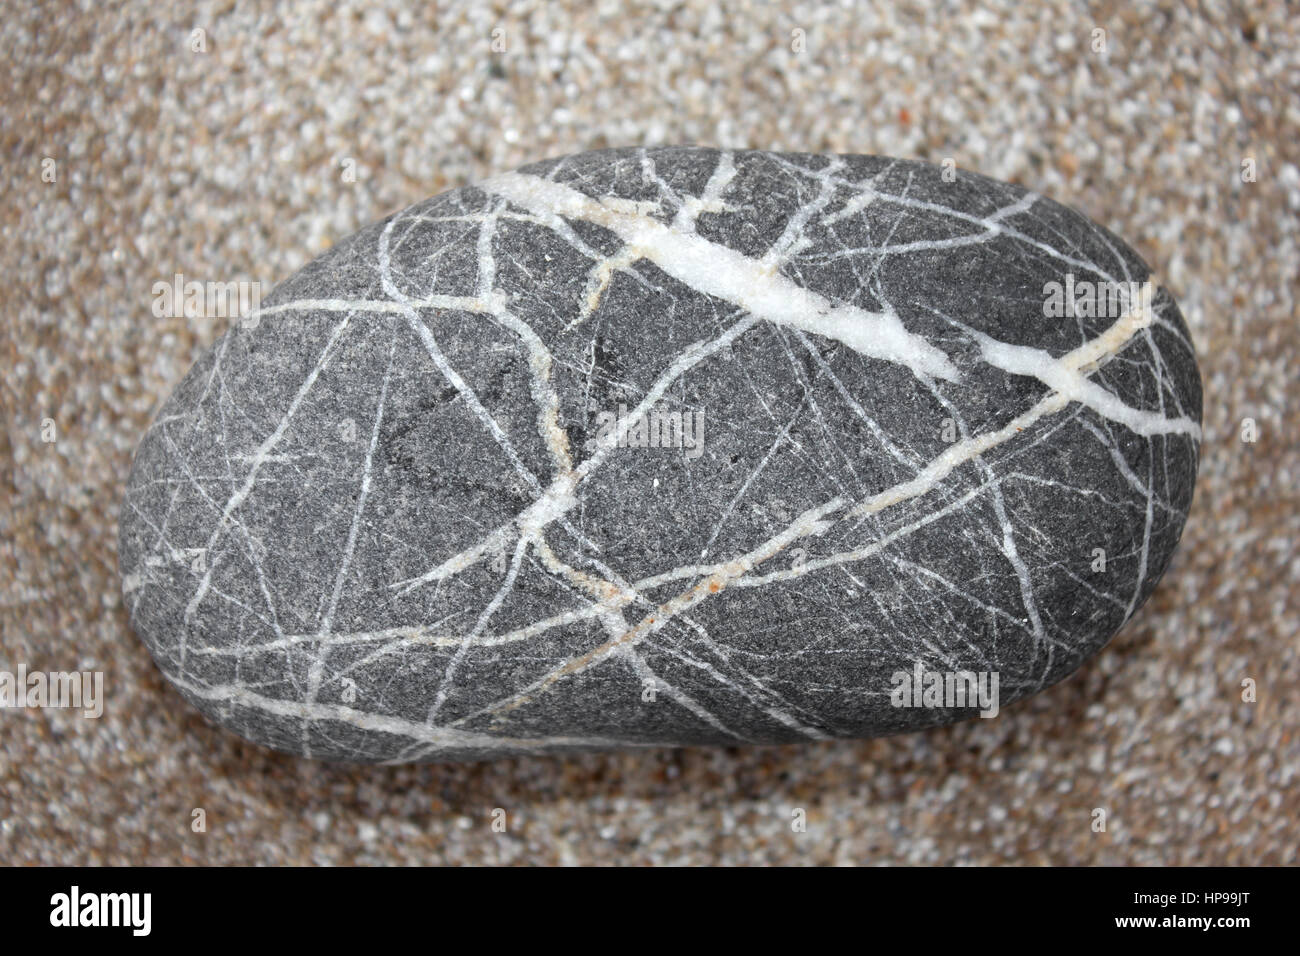 Rock With Quartz Veins Stock Photo